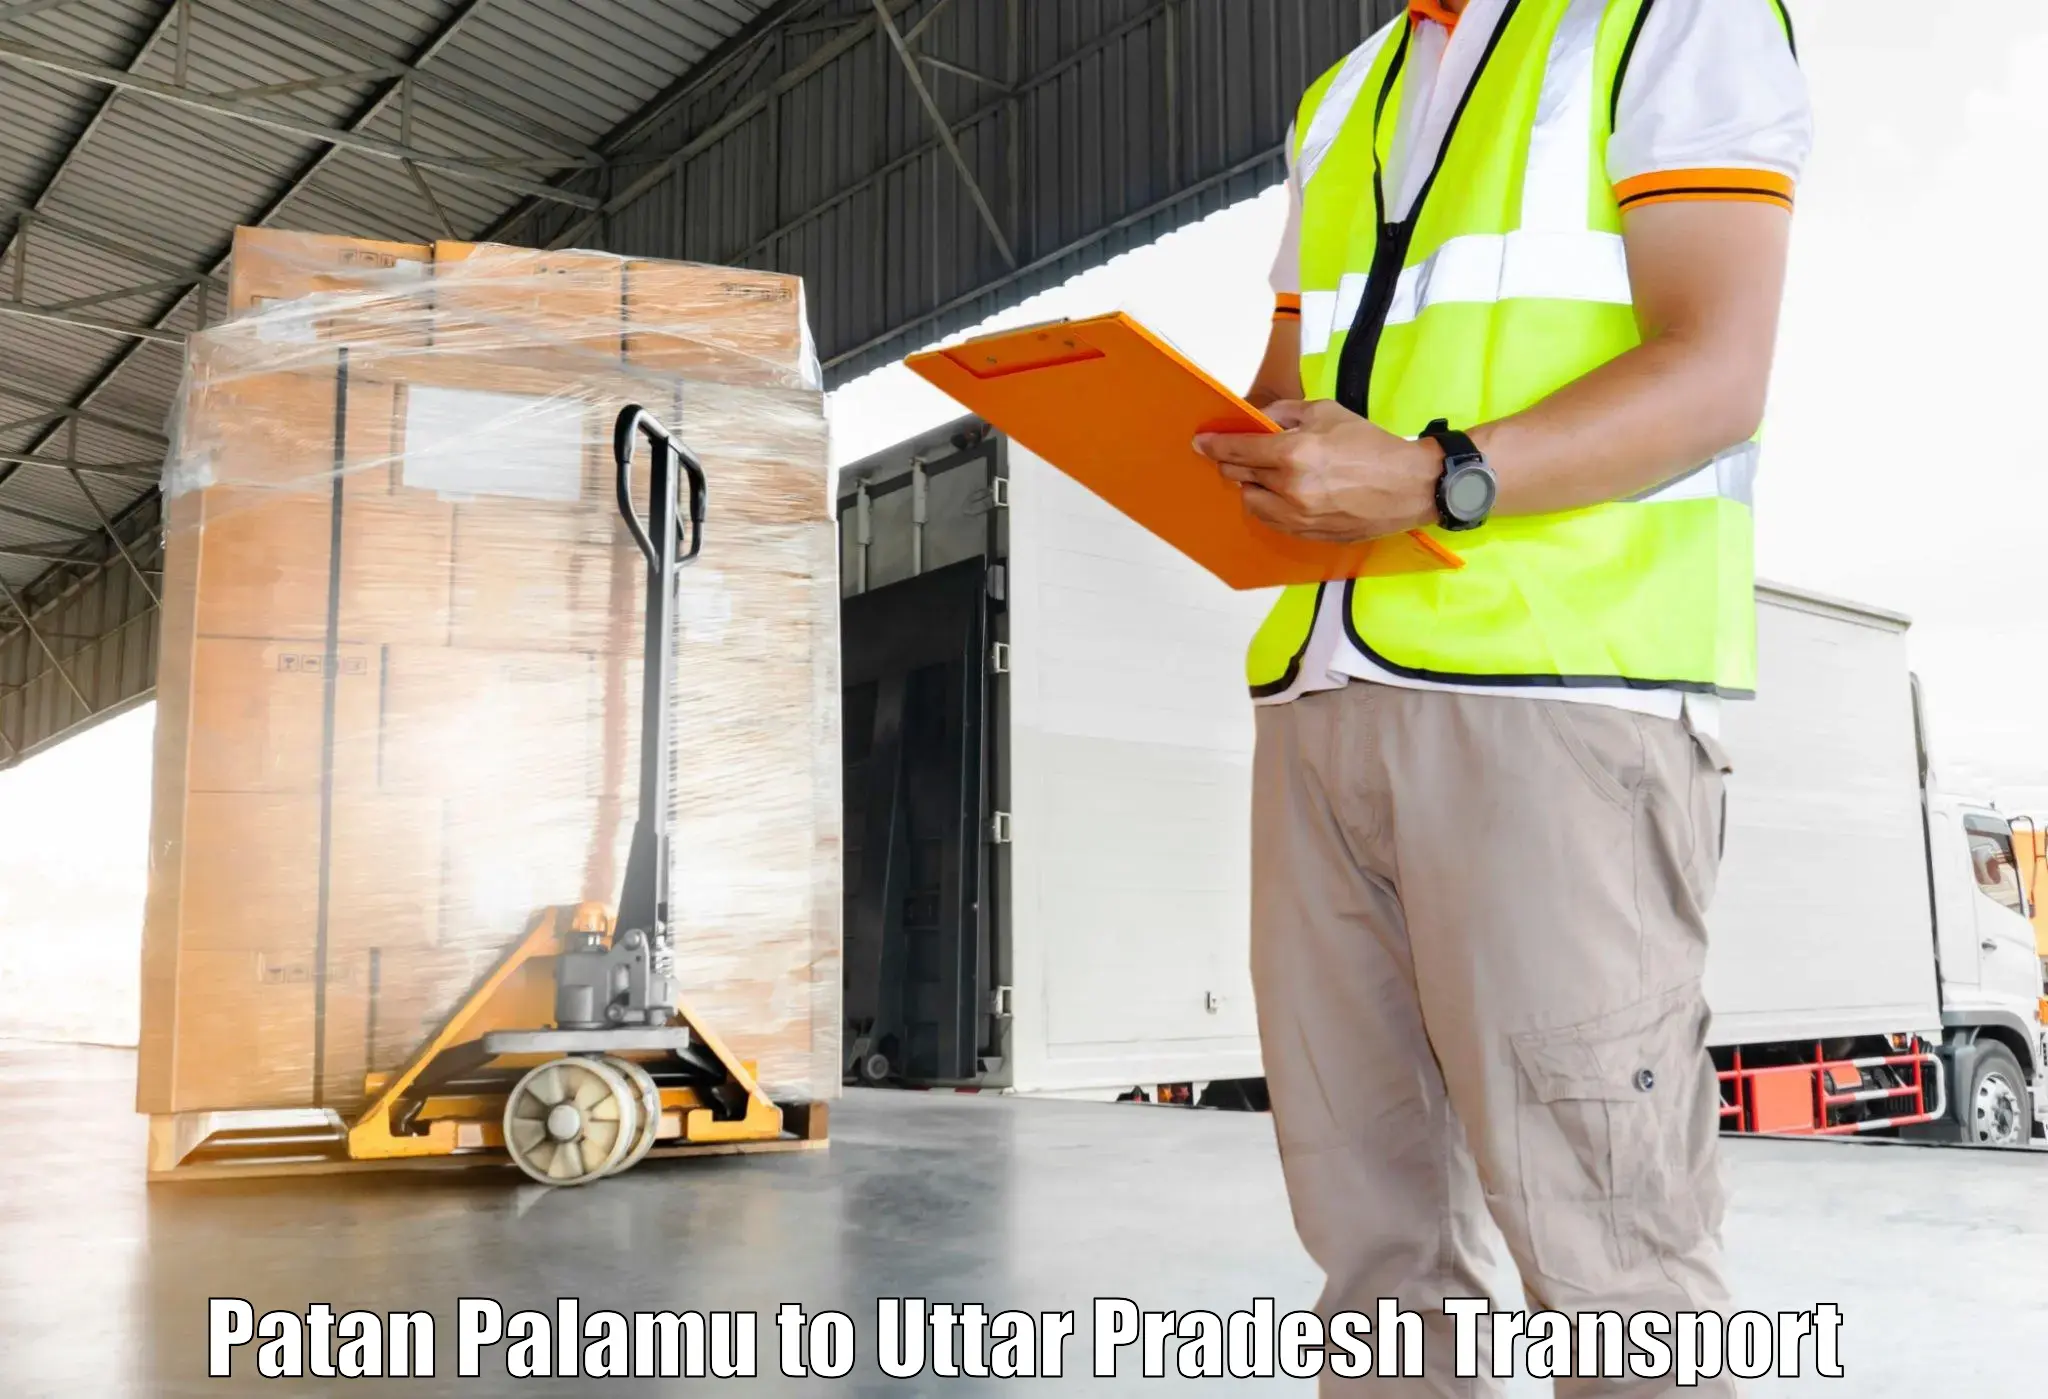 Shipping partner Patan Palamu to Dadri